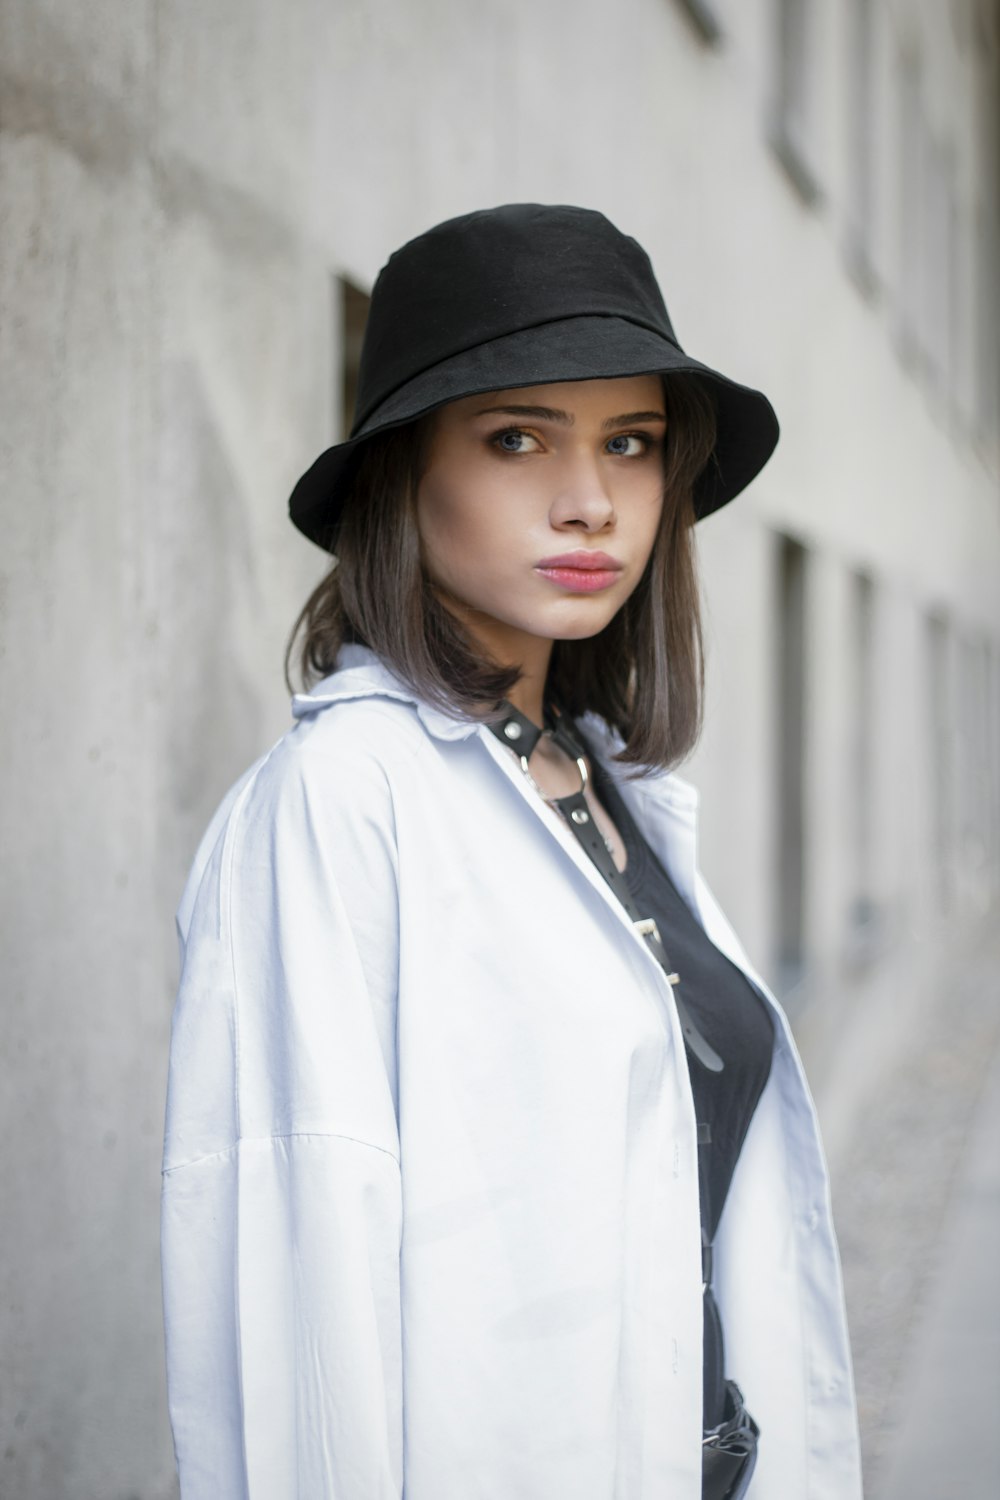 eine Frau in weißem Kittel und schwarzem Hut